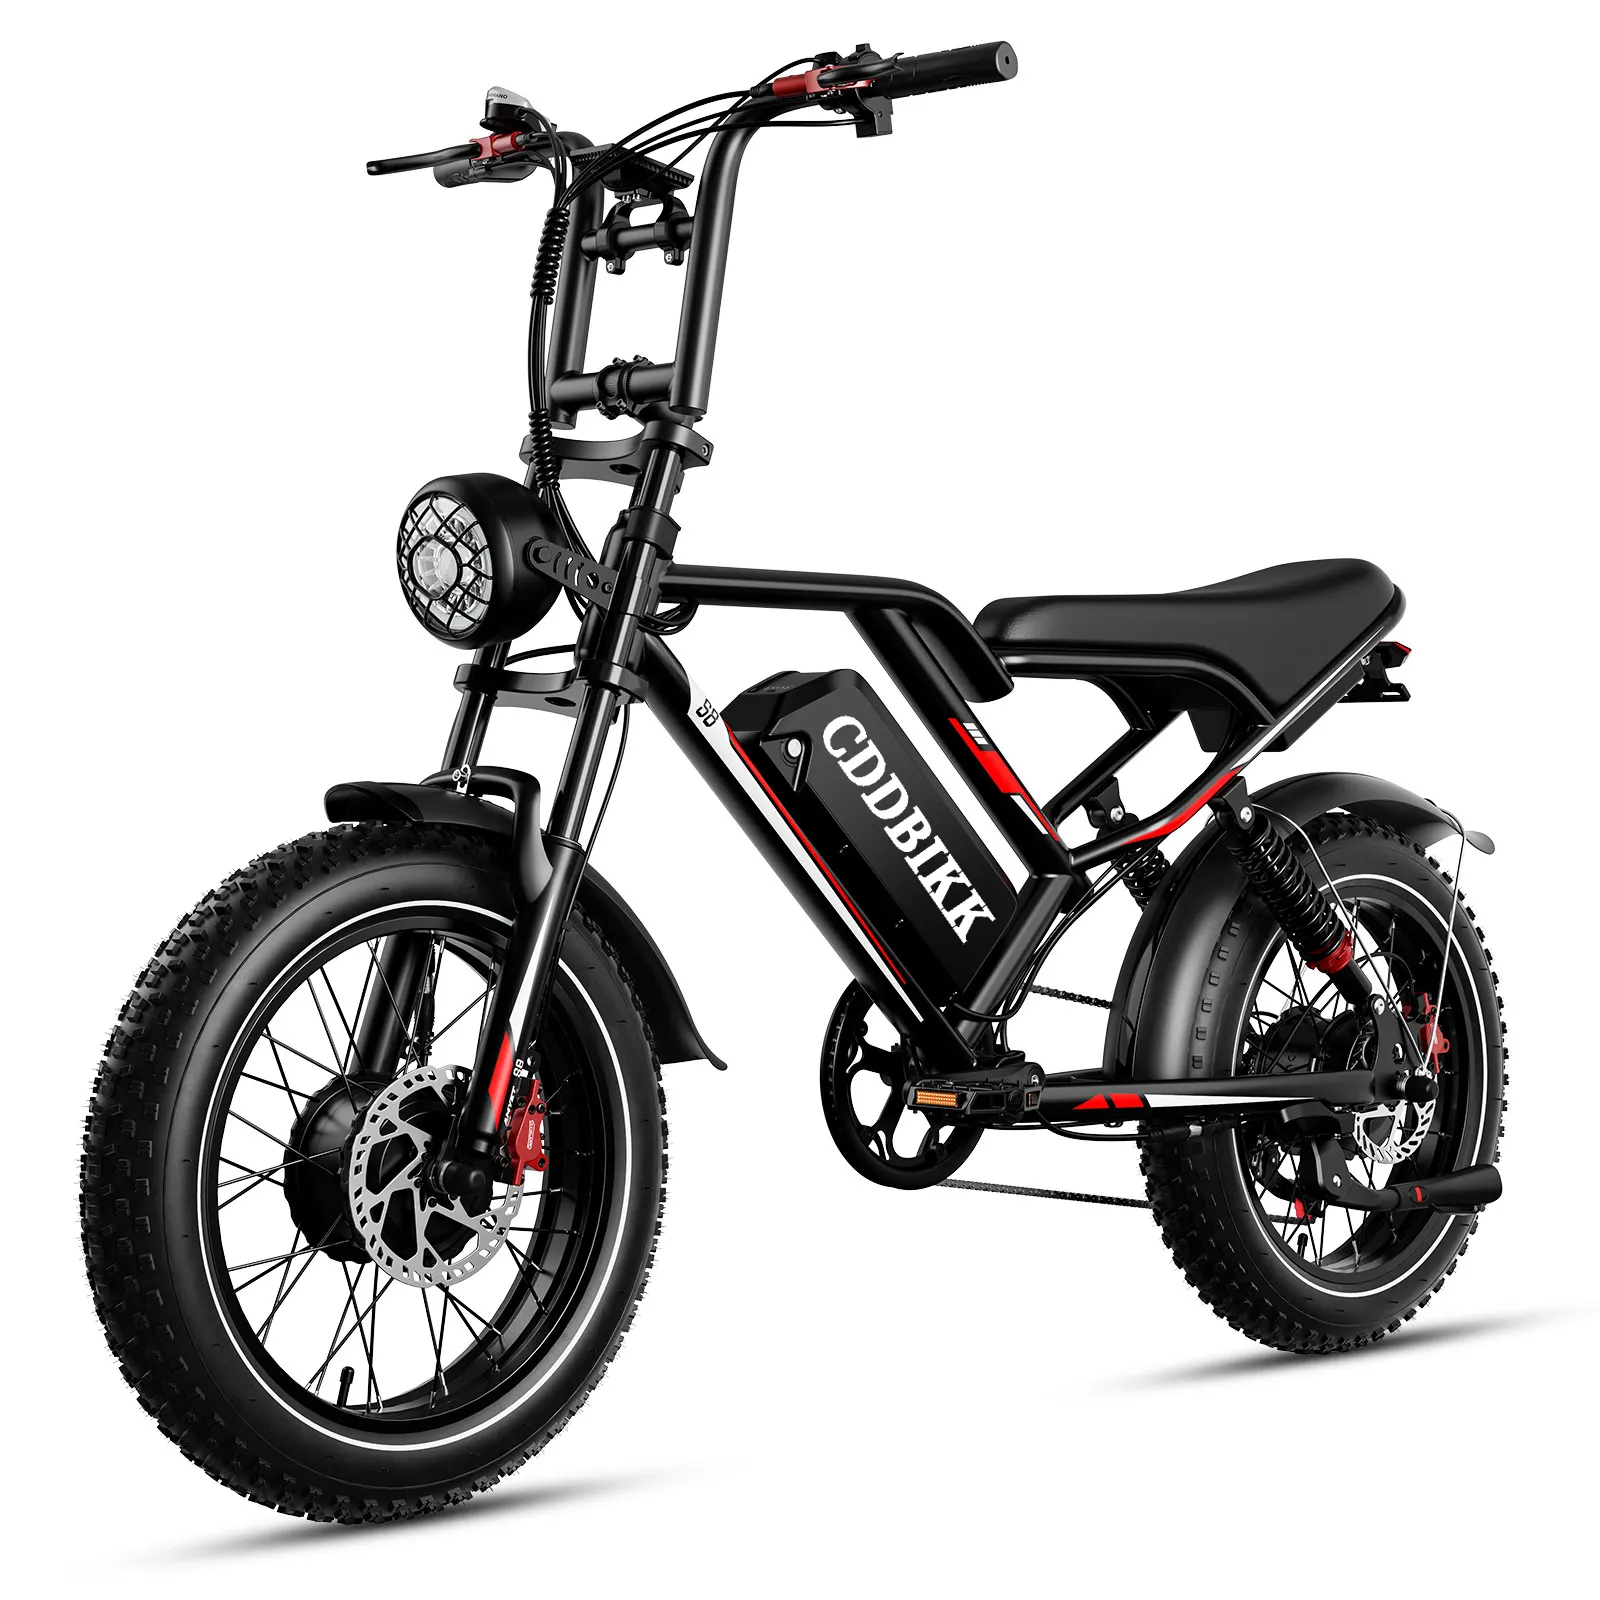 सस्ती इलेक्ट्रिक बाइक इलेक्ट्रिक बाइक 1000w S8 सिंगल मोटर इलेक्ट्रिक साइकिल इलेक्ट्रिक बाइक खरीदें